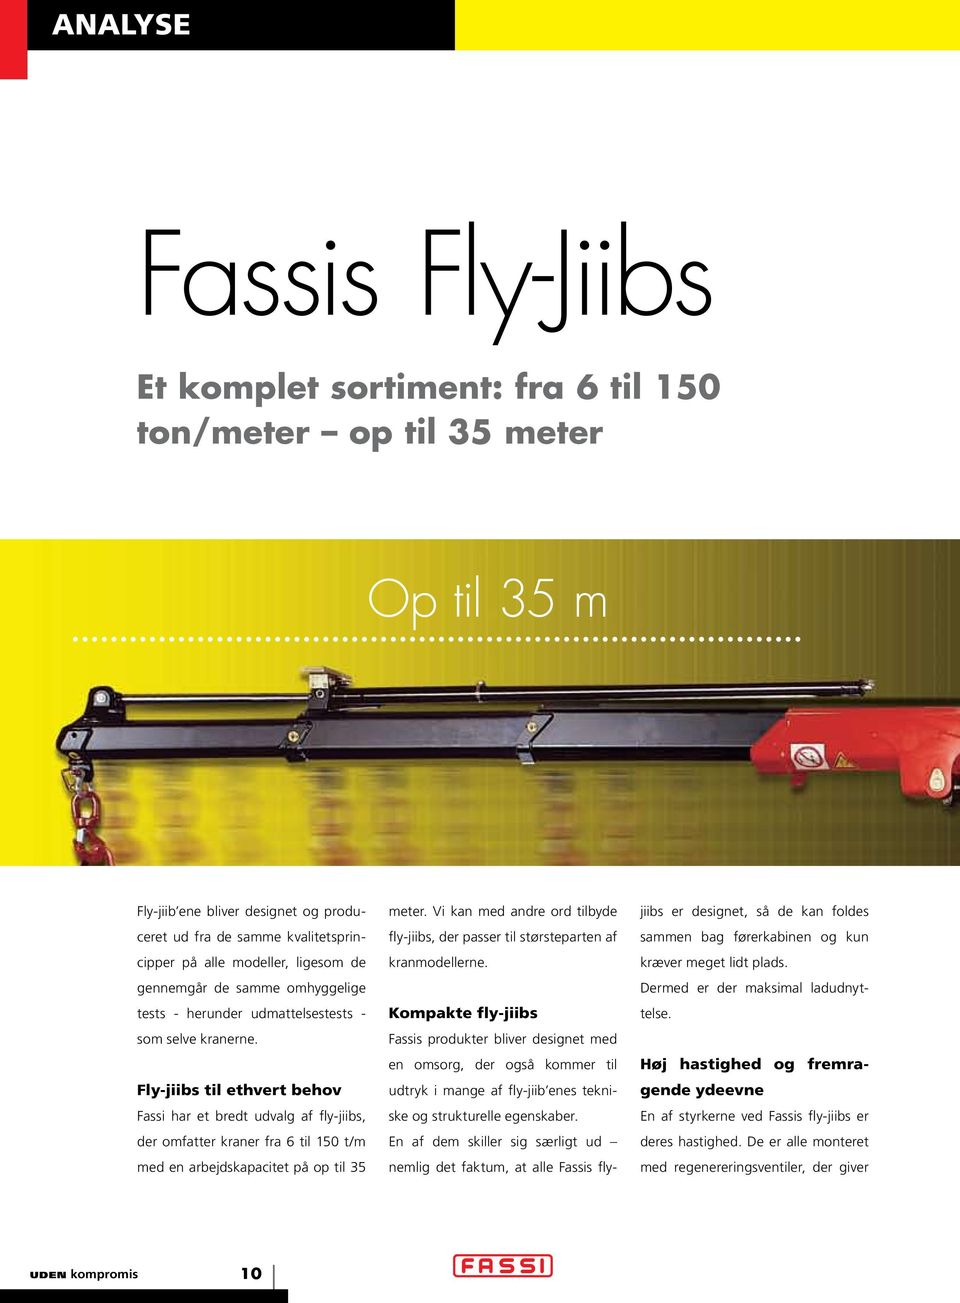 Fly-jiibs til ethvert behov Fassi har et bredt udvalg af fly-jiibs, der omfatter kraner fra 6 til 150 t/m med en arbejdskapacitet på op til 35 meter.